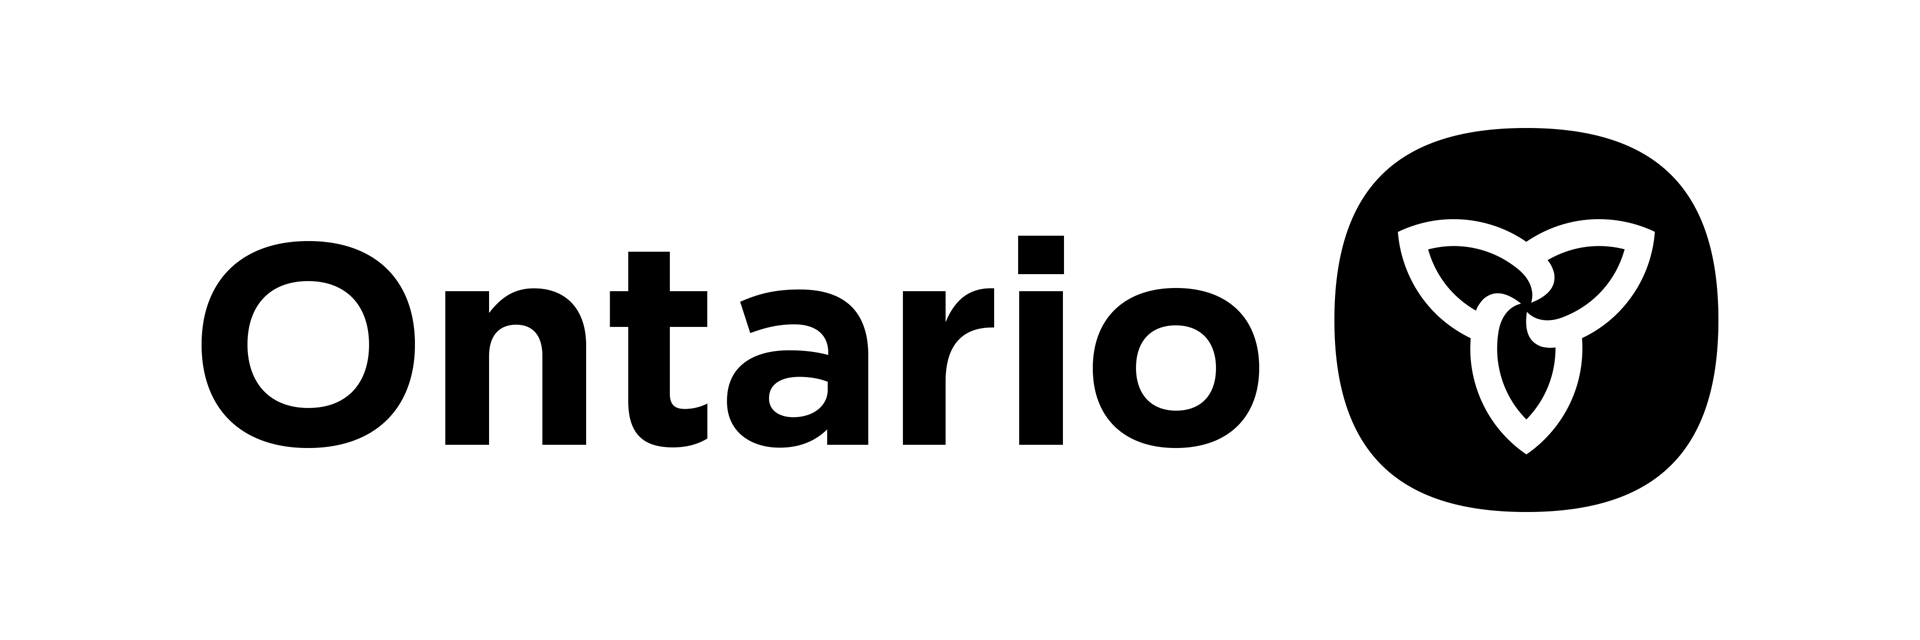 ontario logo with trillium